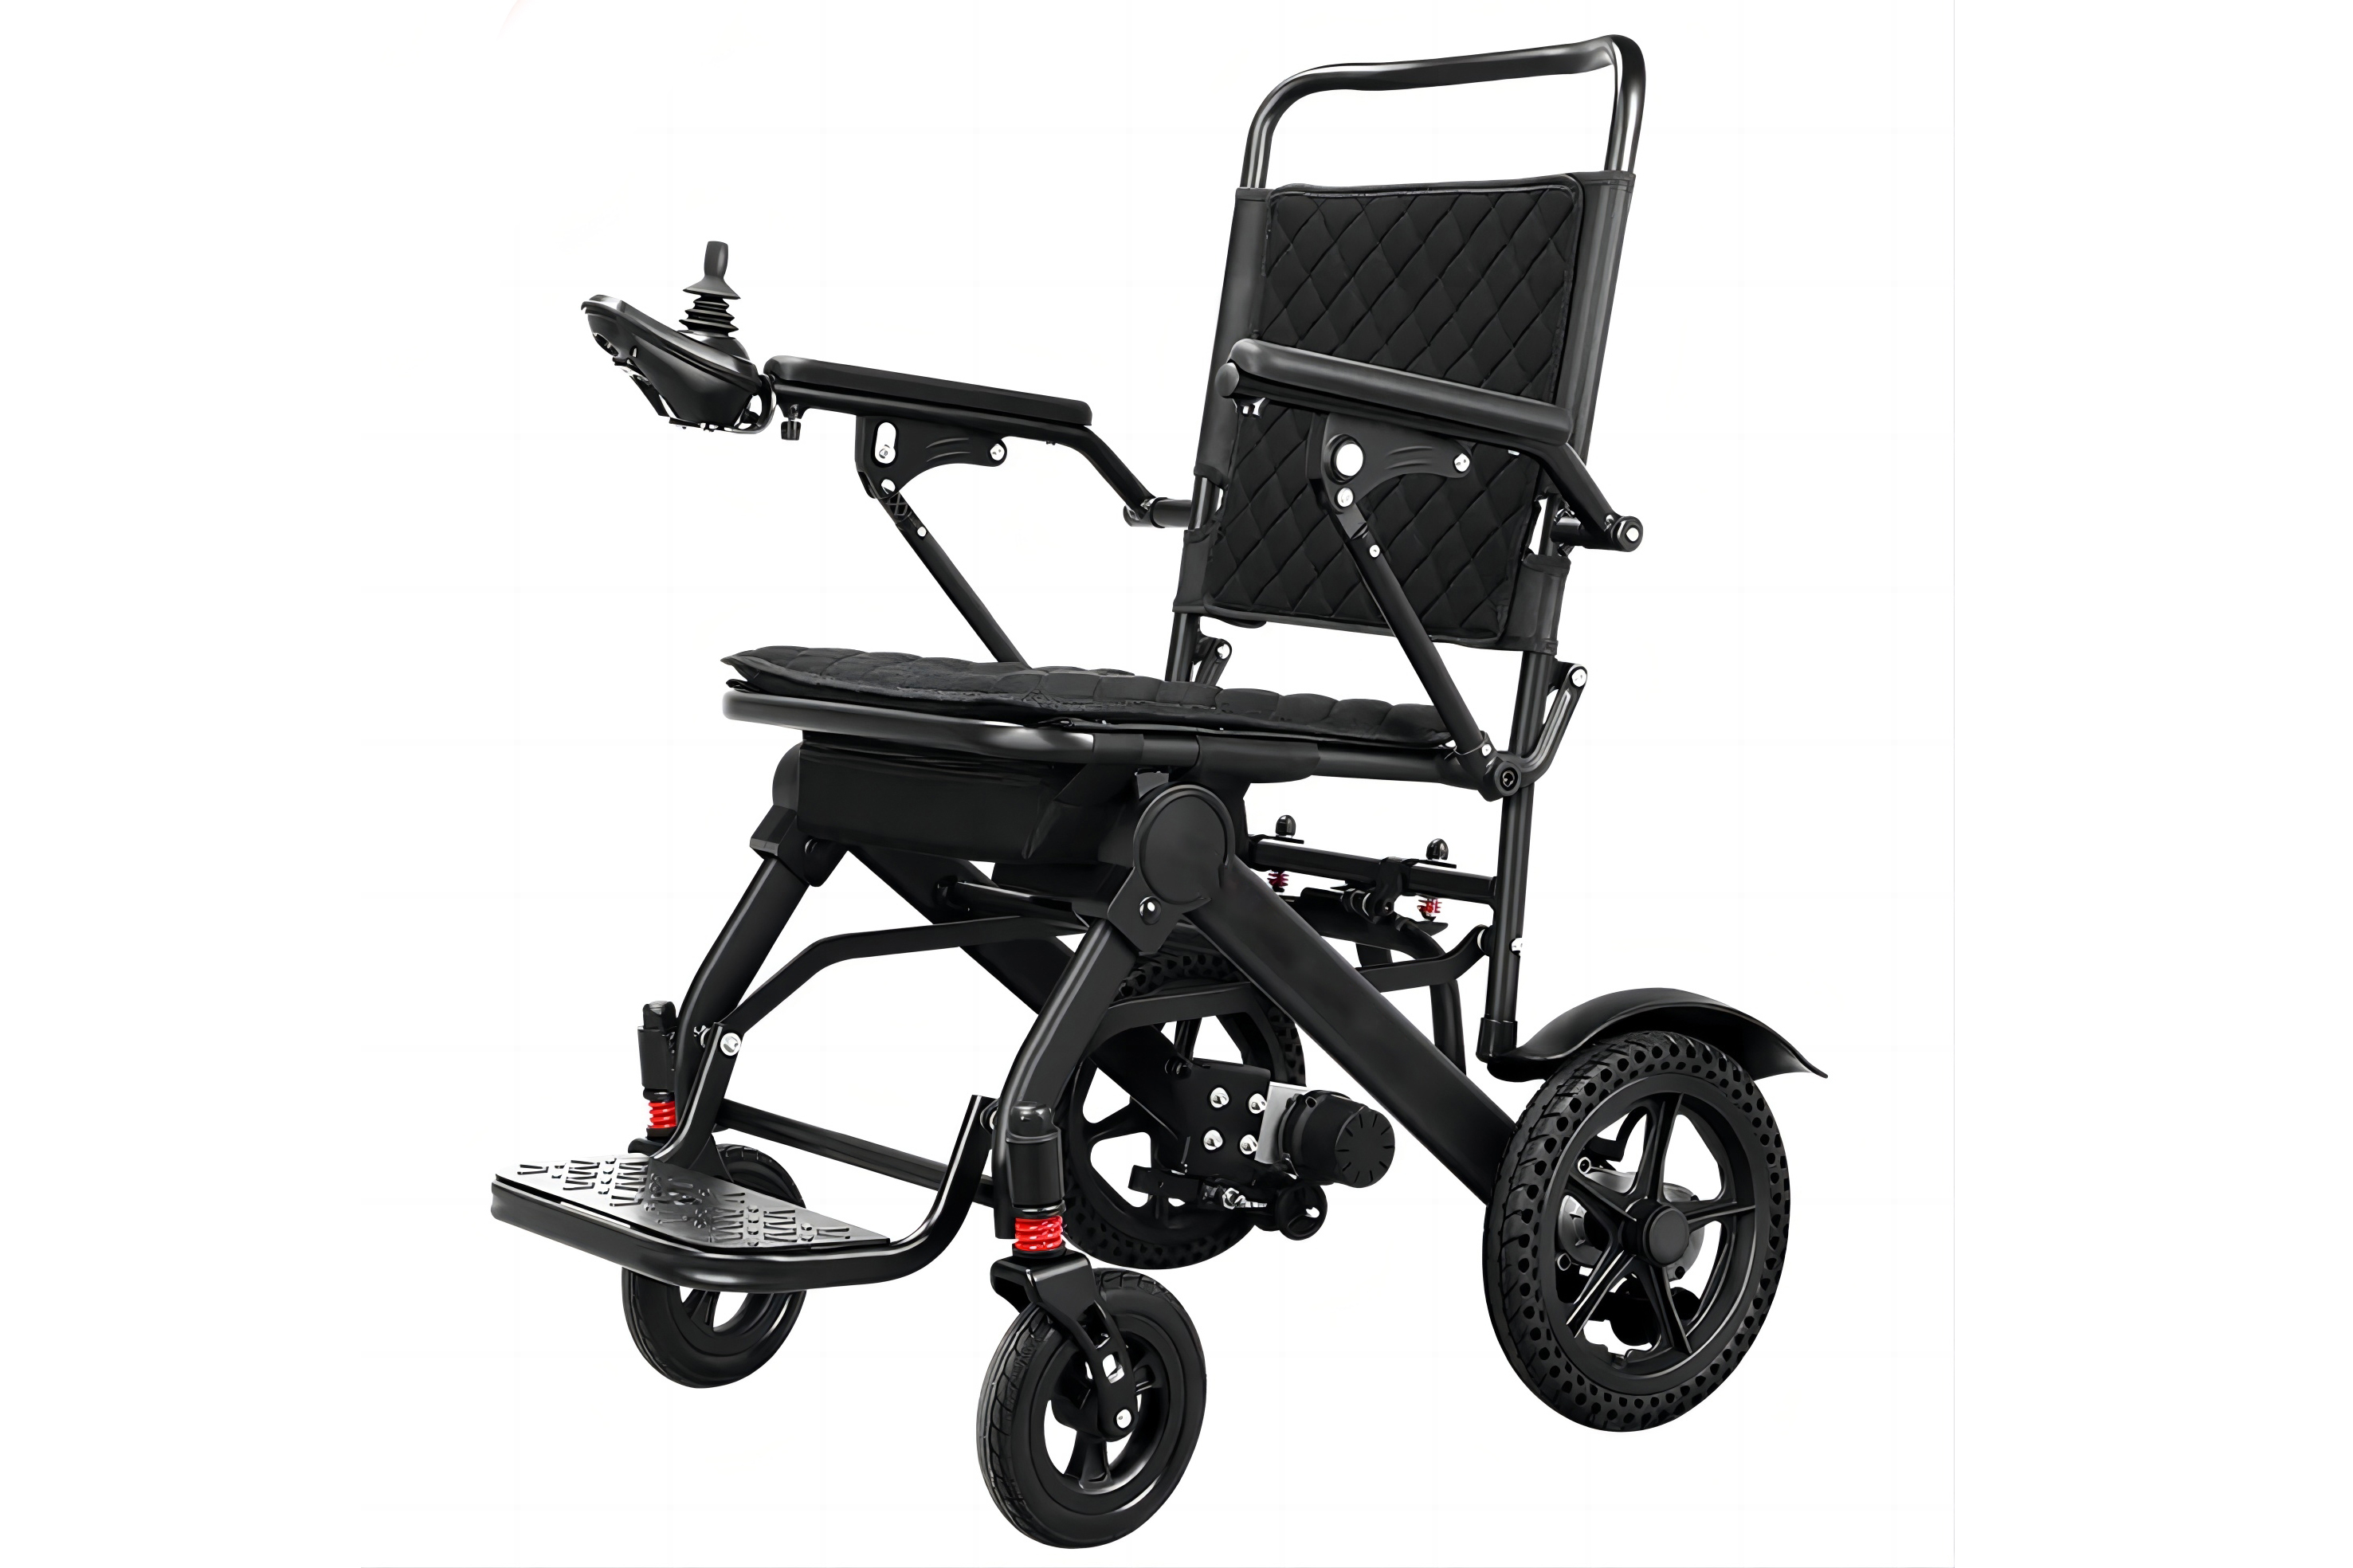 lagana invalidska kolica za starije osobe